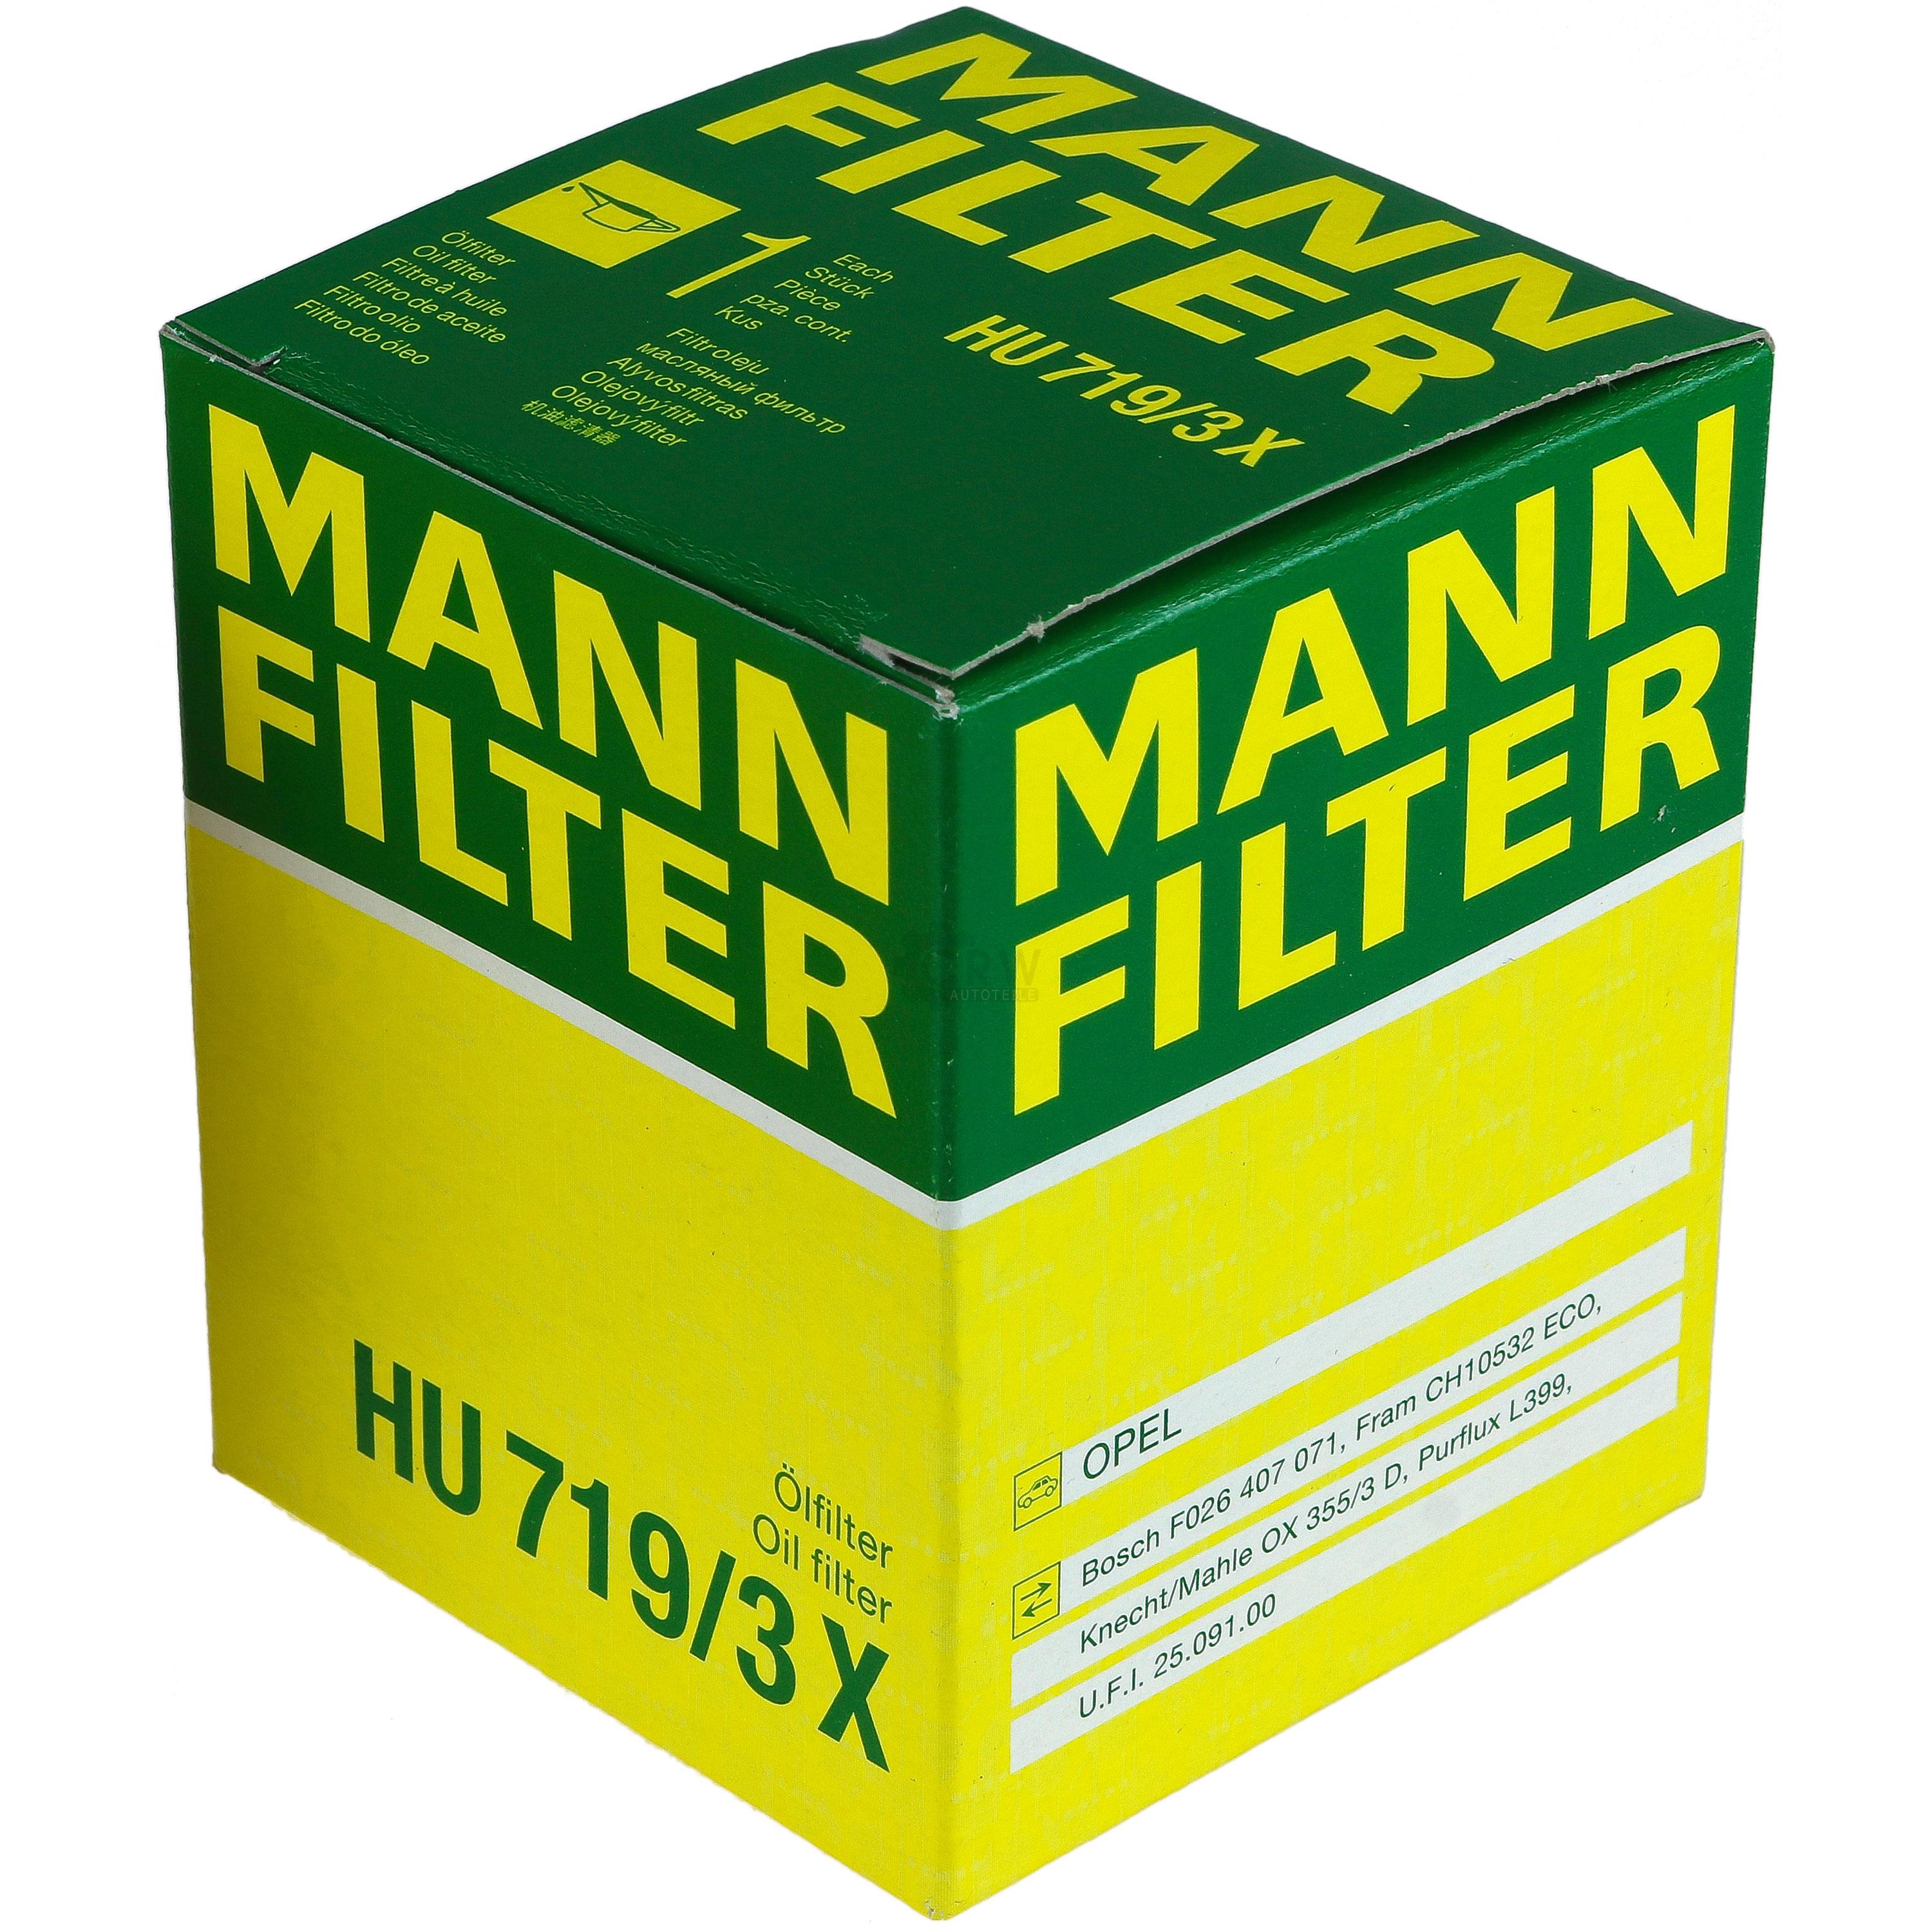 MANN-FILTER Ölfilter HU 719/3 x Oil Filter